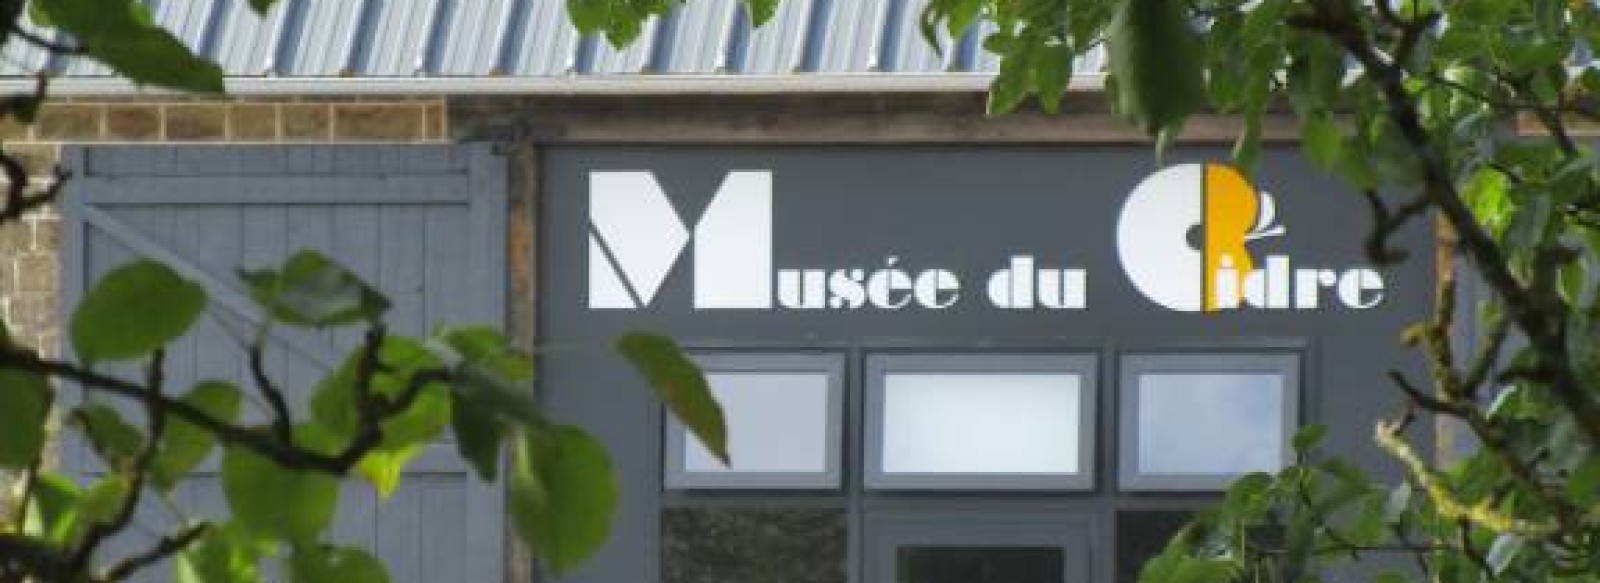 MUSEE DU CIDRE -  DOMAINE DE LA DURETIERE